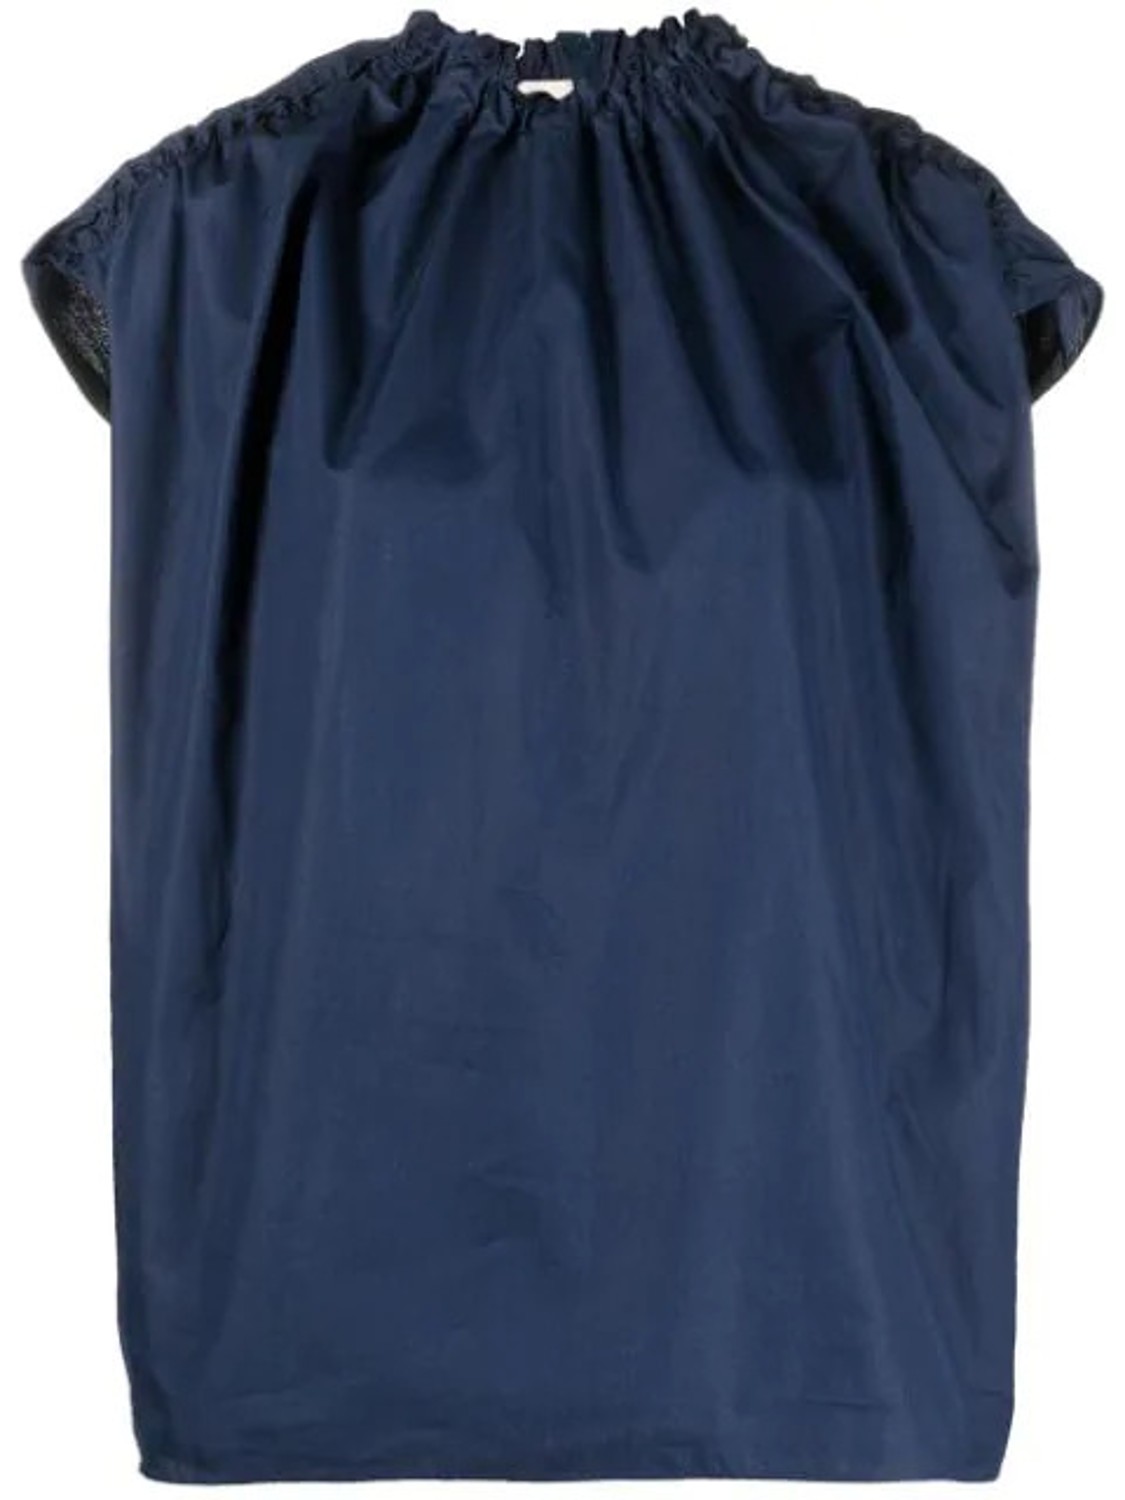 shop Marni Saldi Tops: Tops Marni, girocollo, arricciato su collo e spalle, chiusura posteriore con zip, in colore blu.

Composizione: 100% cotone. number 2006